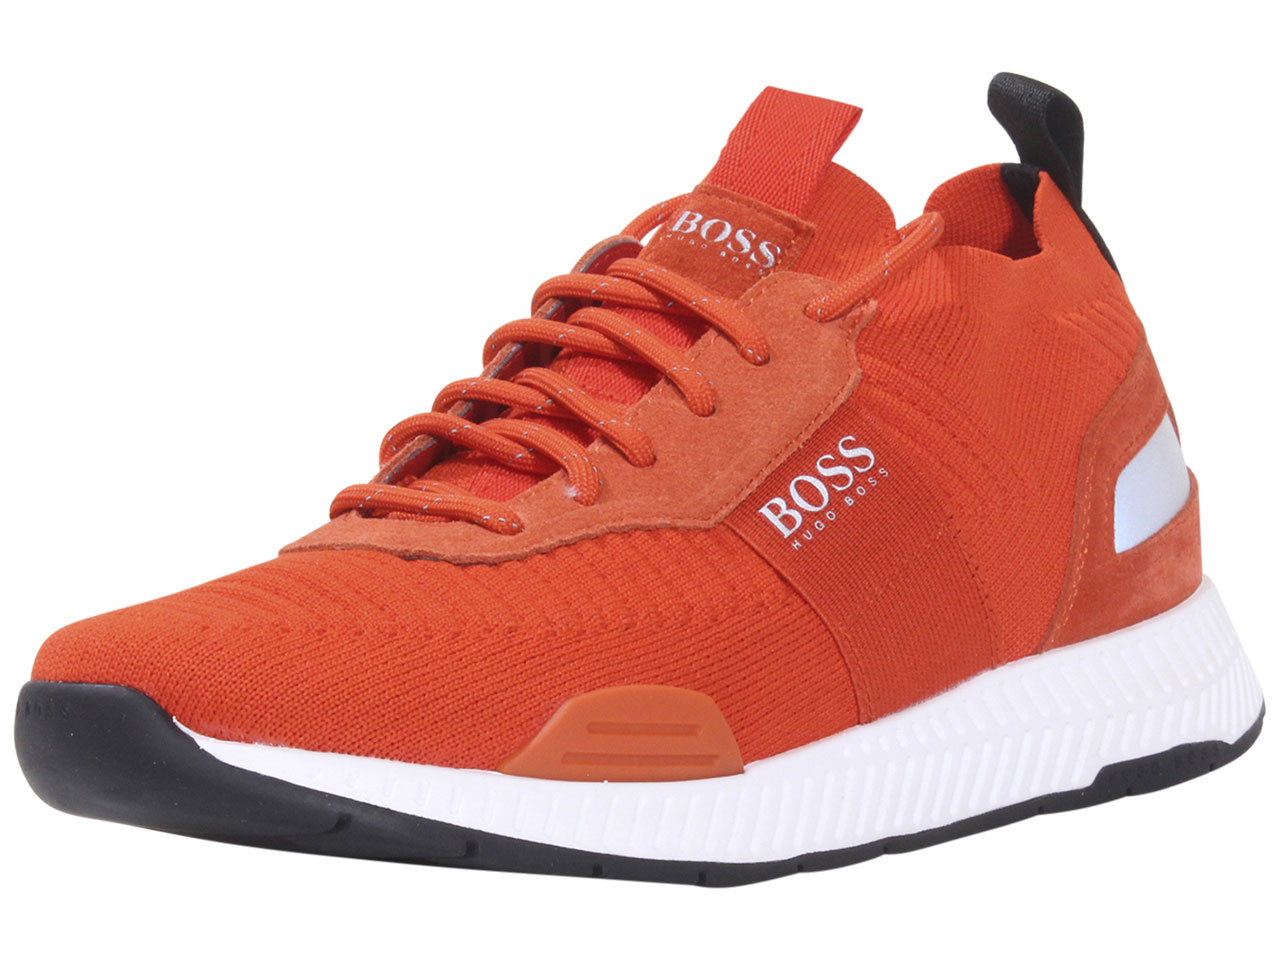 Boss Men's Titanium Knit Trainers Shoes Bright Orange Sz. 7